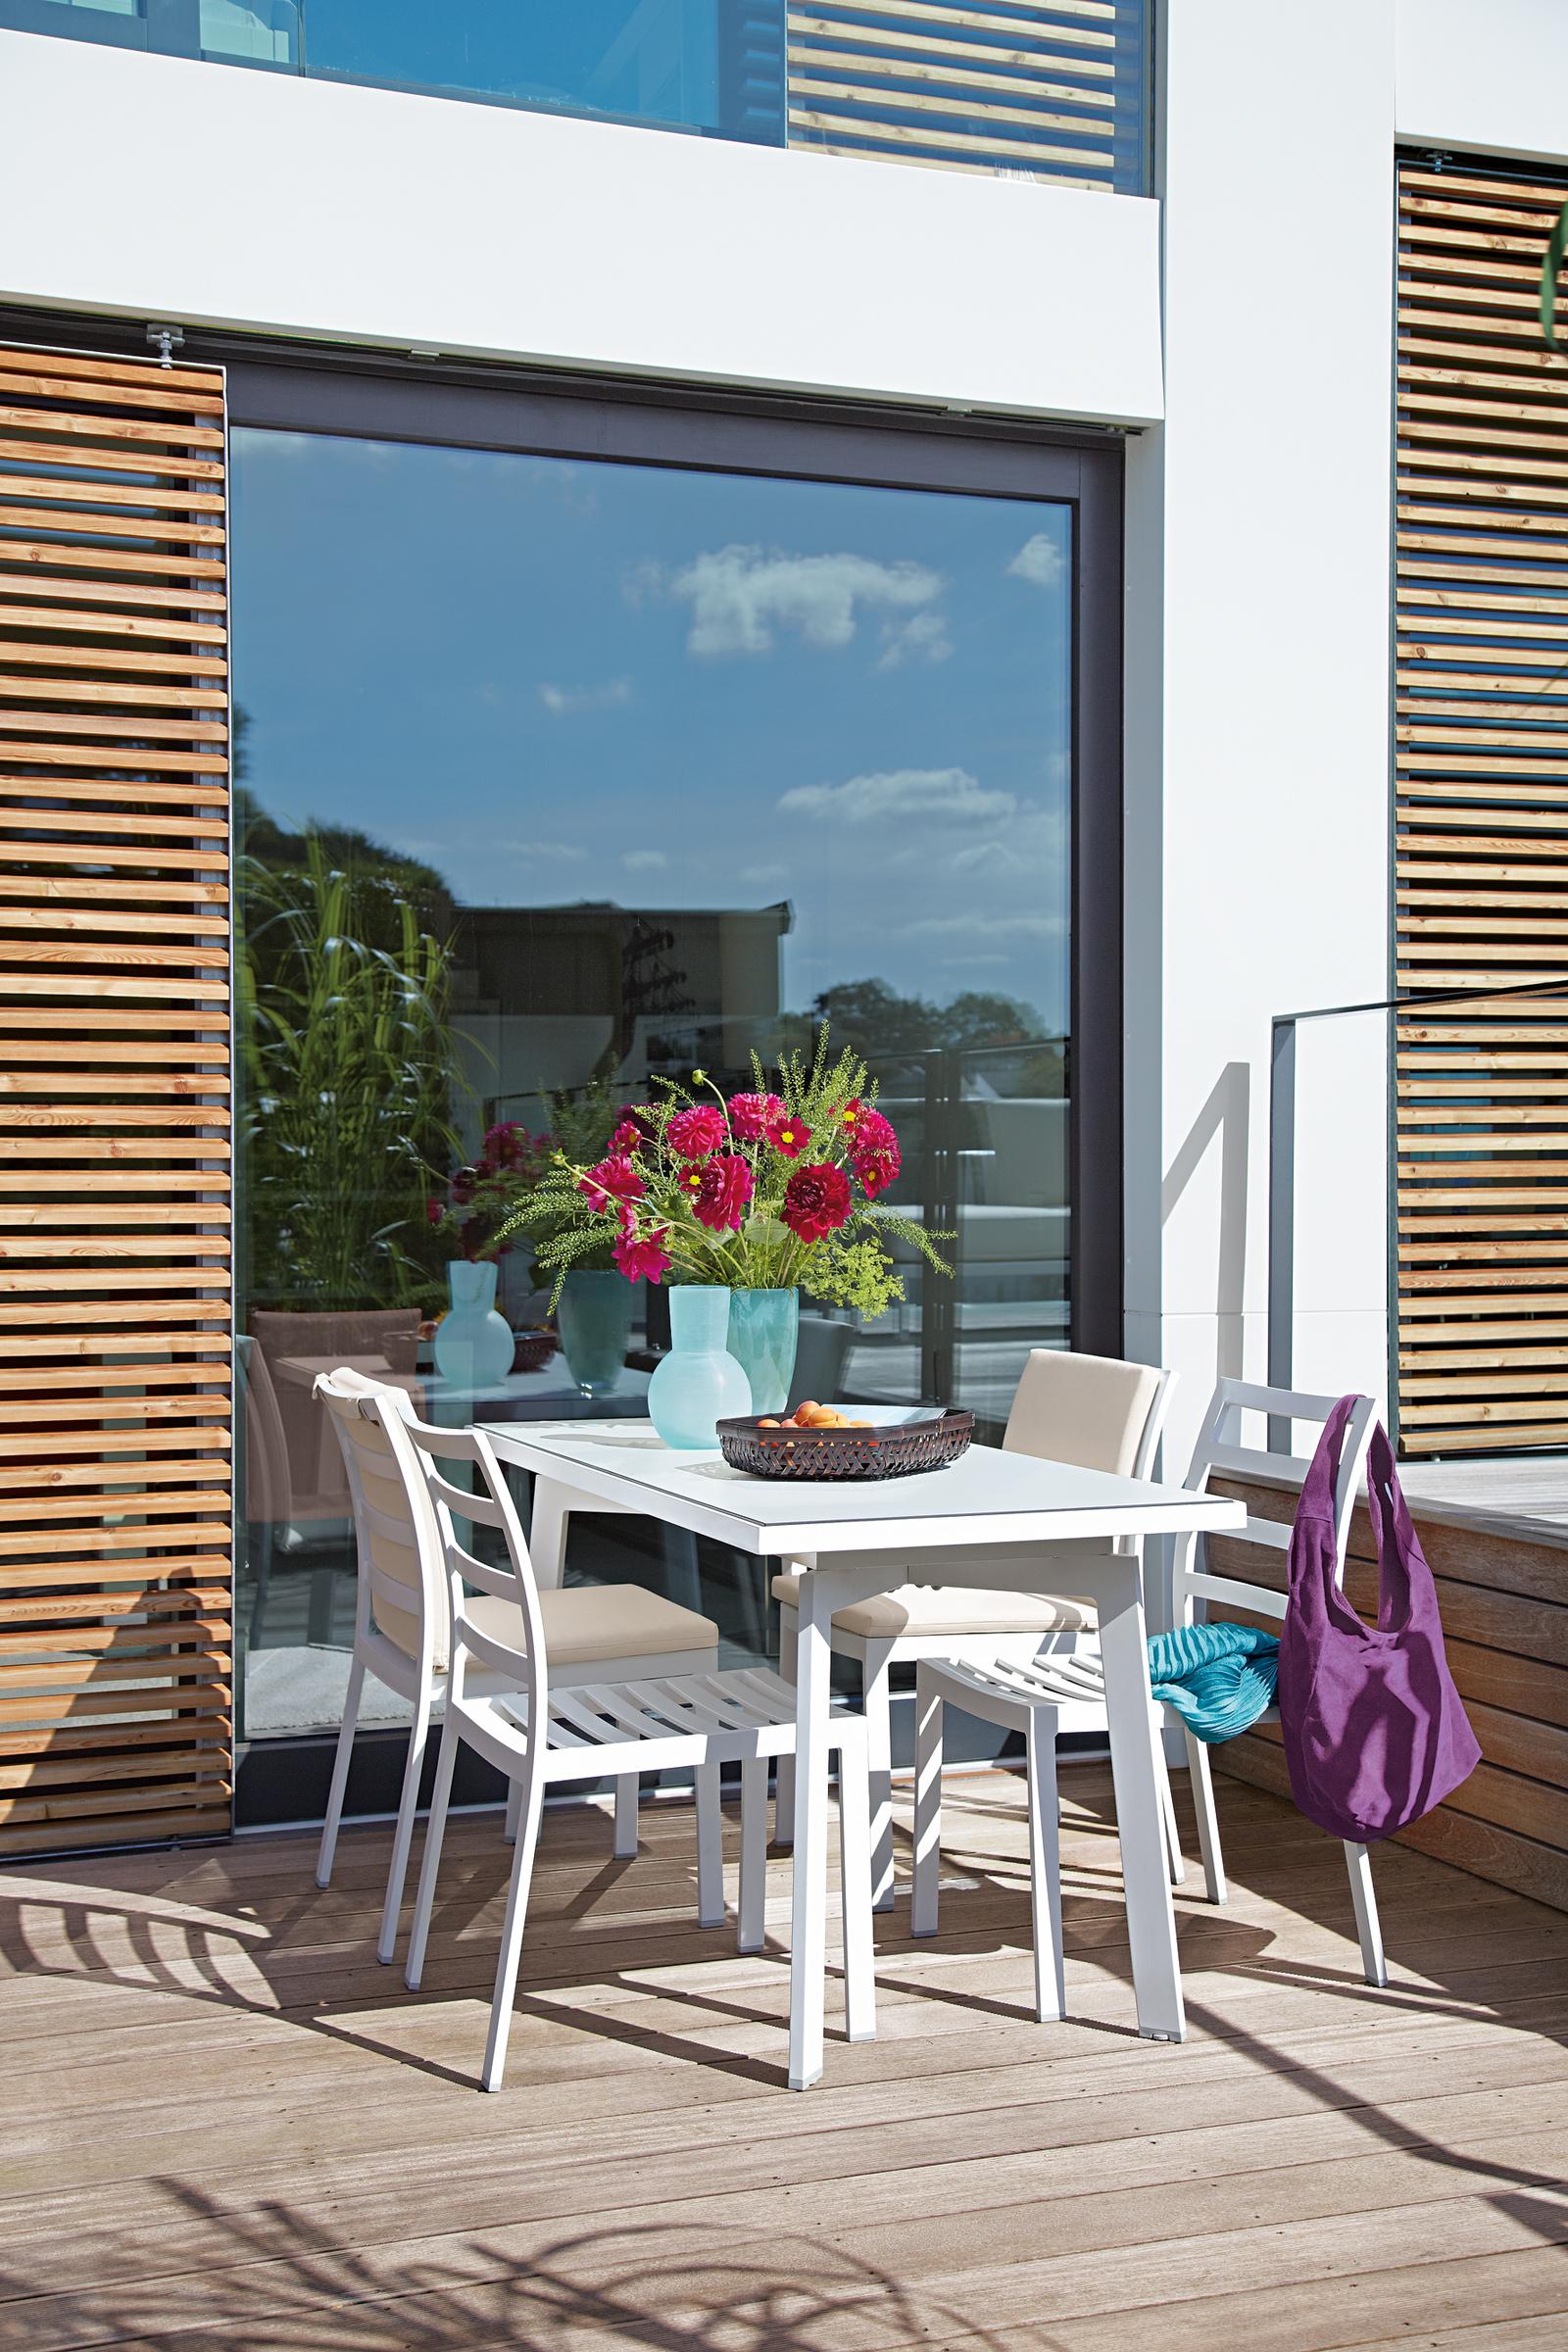 Sitzecke in Weiß #terrasse #gartenmöbel #sichtschutz #weißesgartenmöbel #balkonmöbel #terrassenmöbel ©Garpa